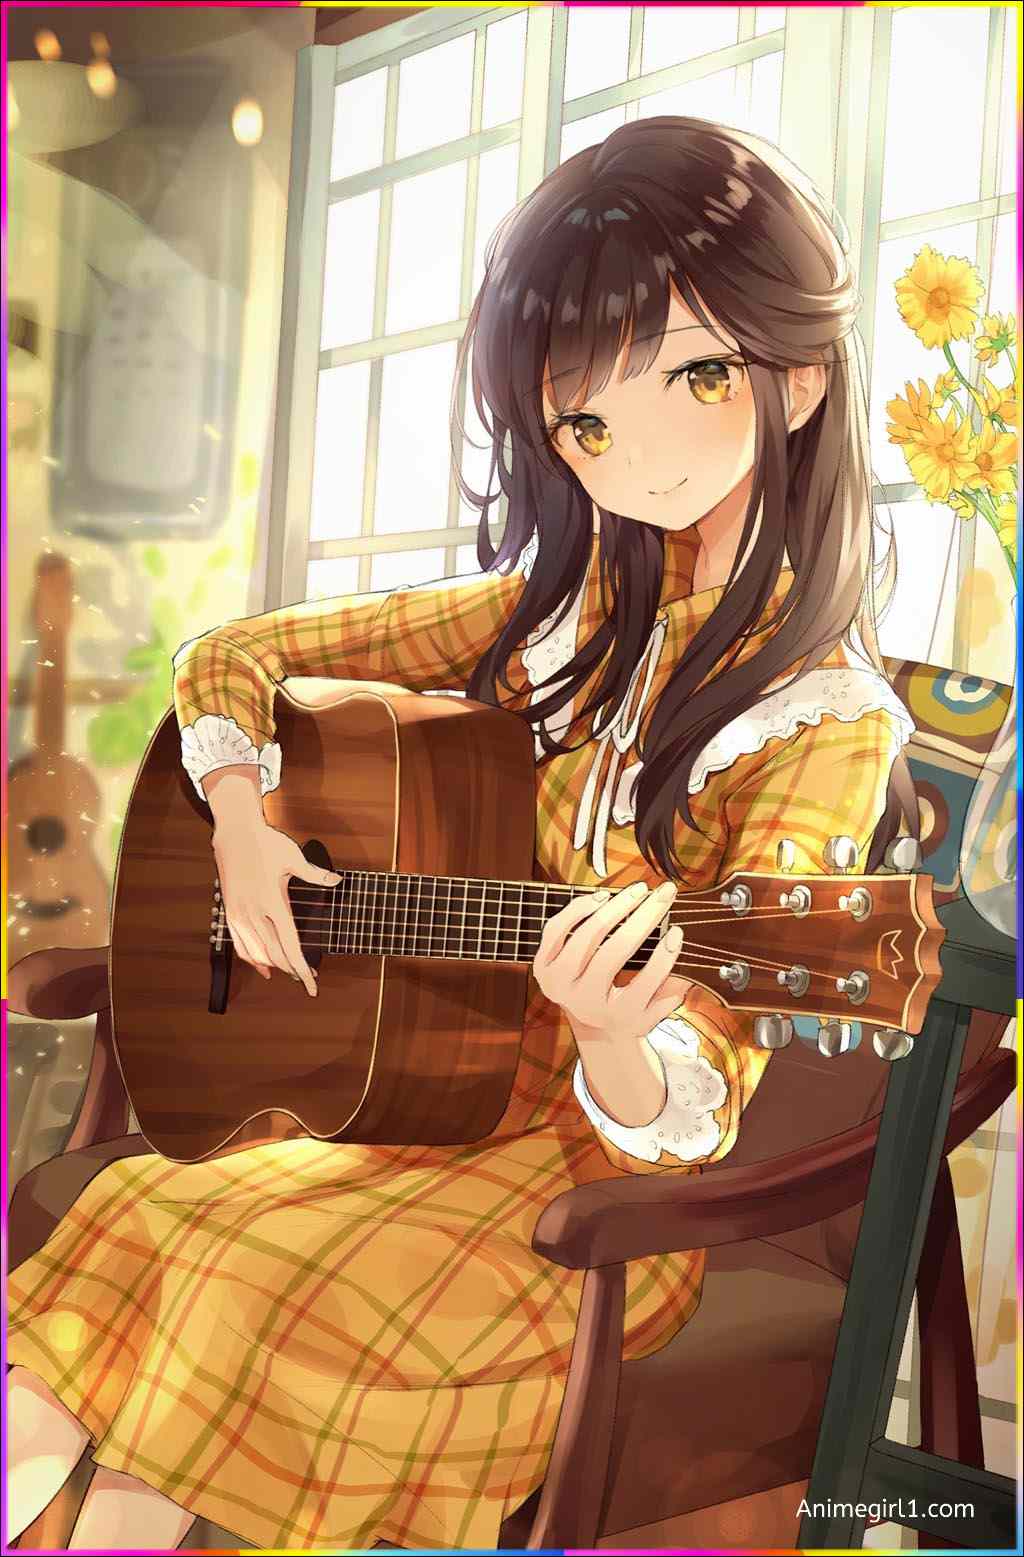 anime girl playing guitar